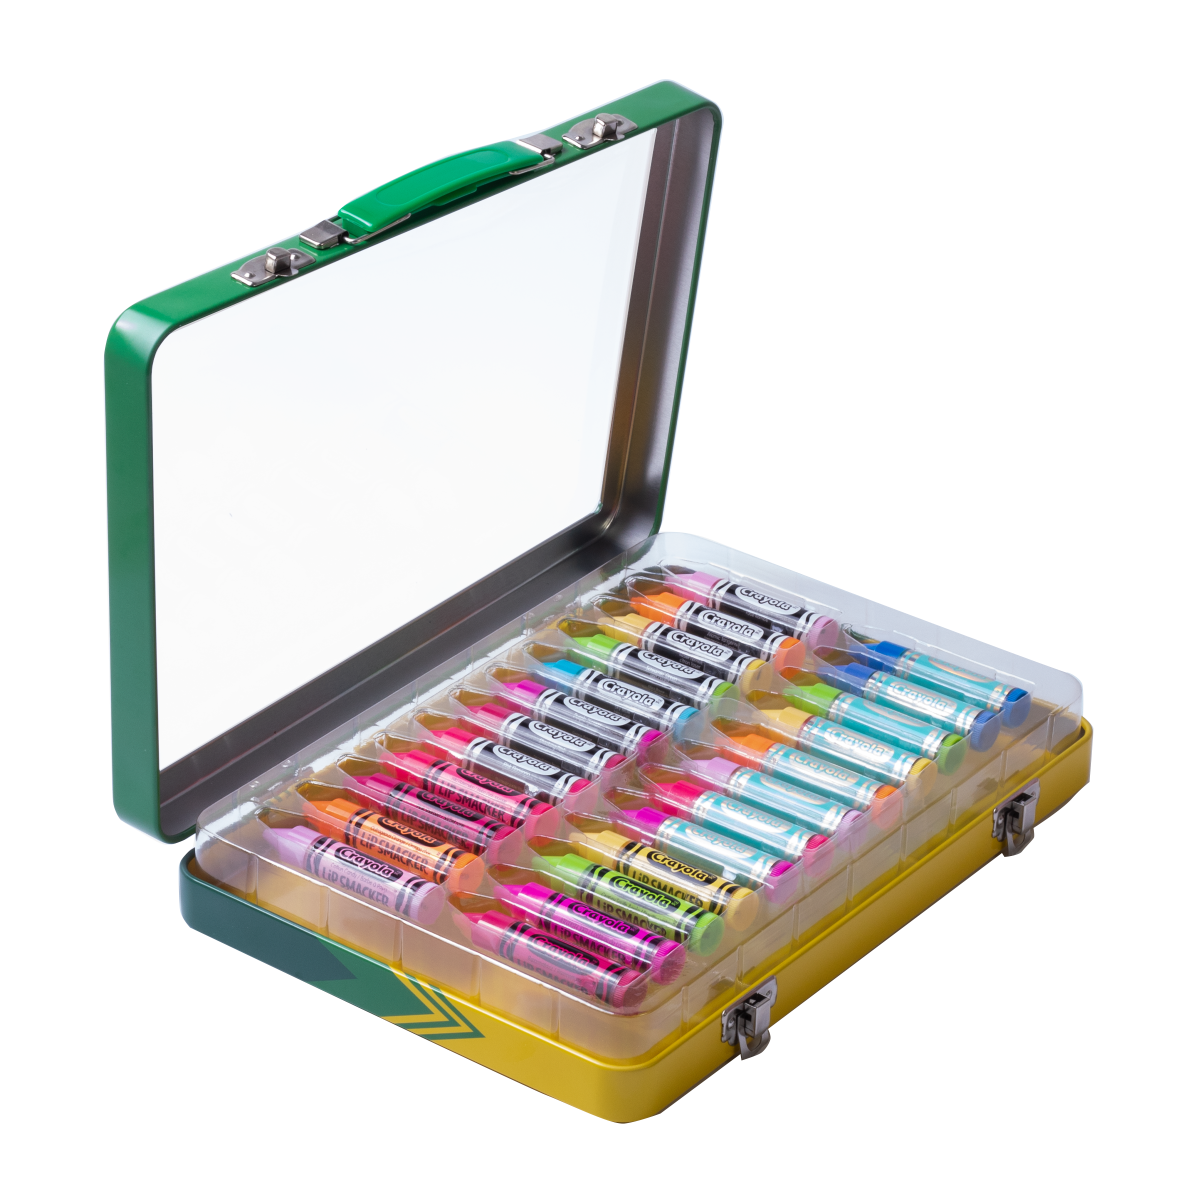 Crayola, Other, Frozen Crayola Set In Decorative Case